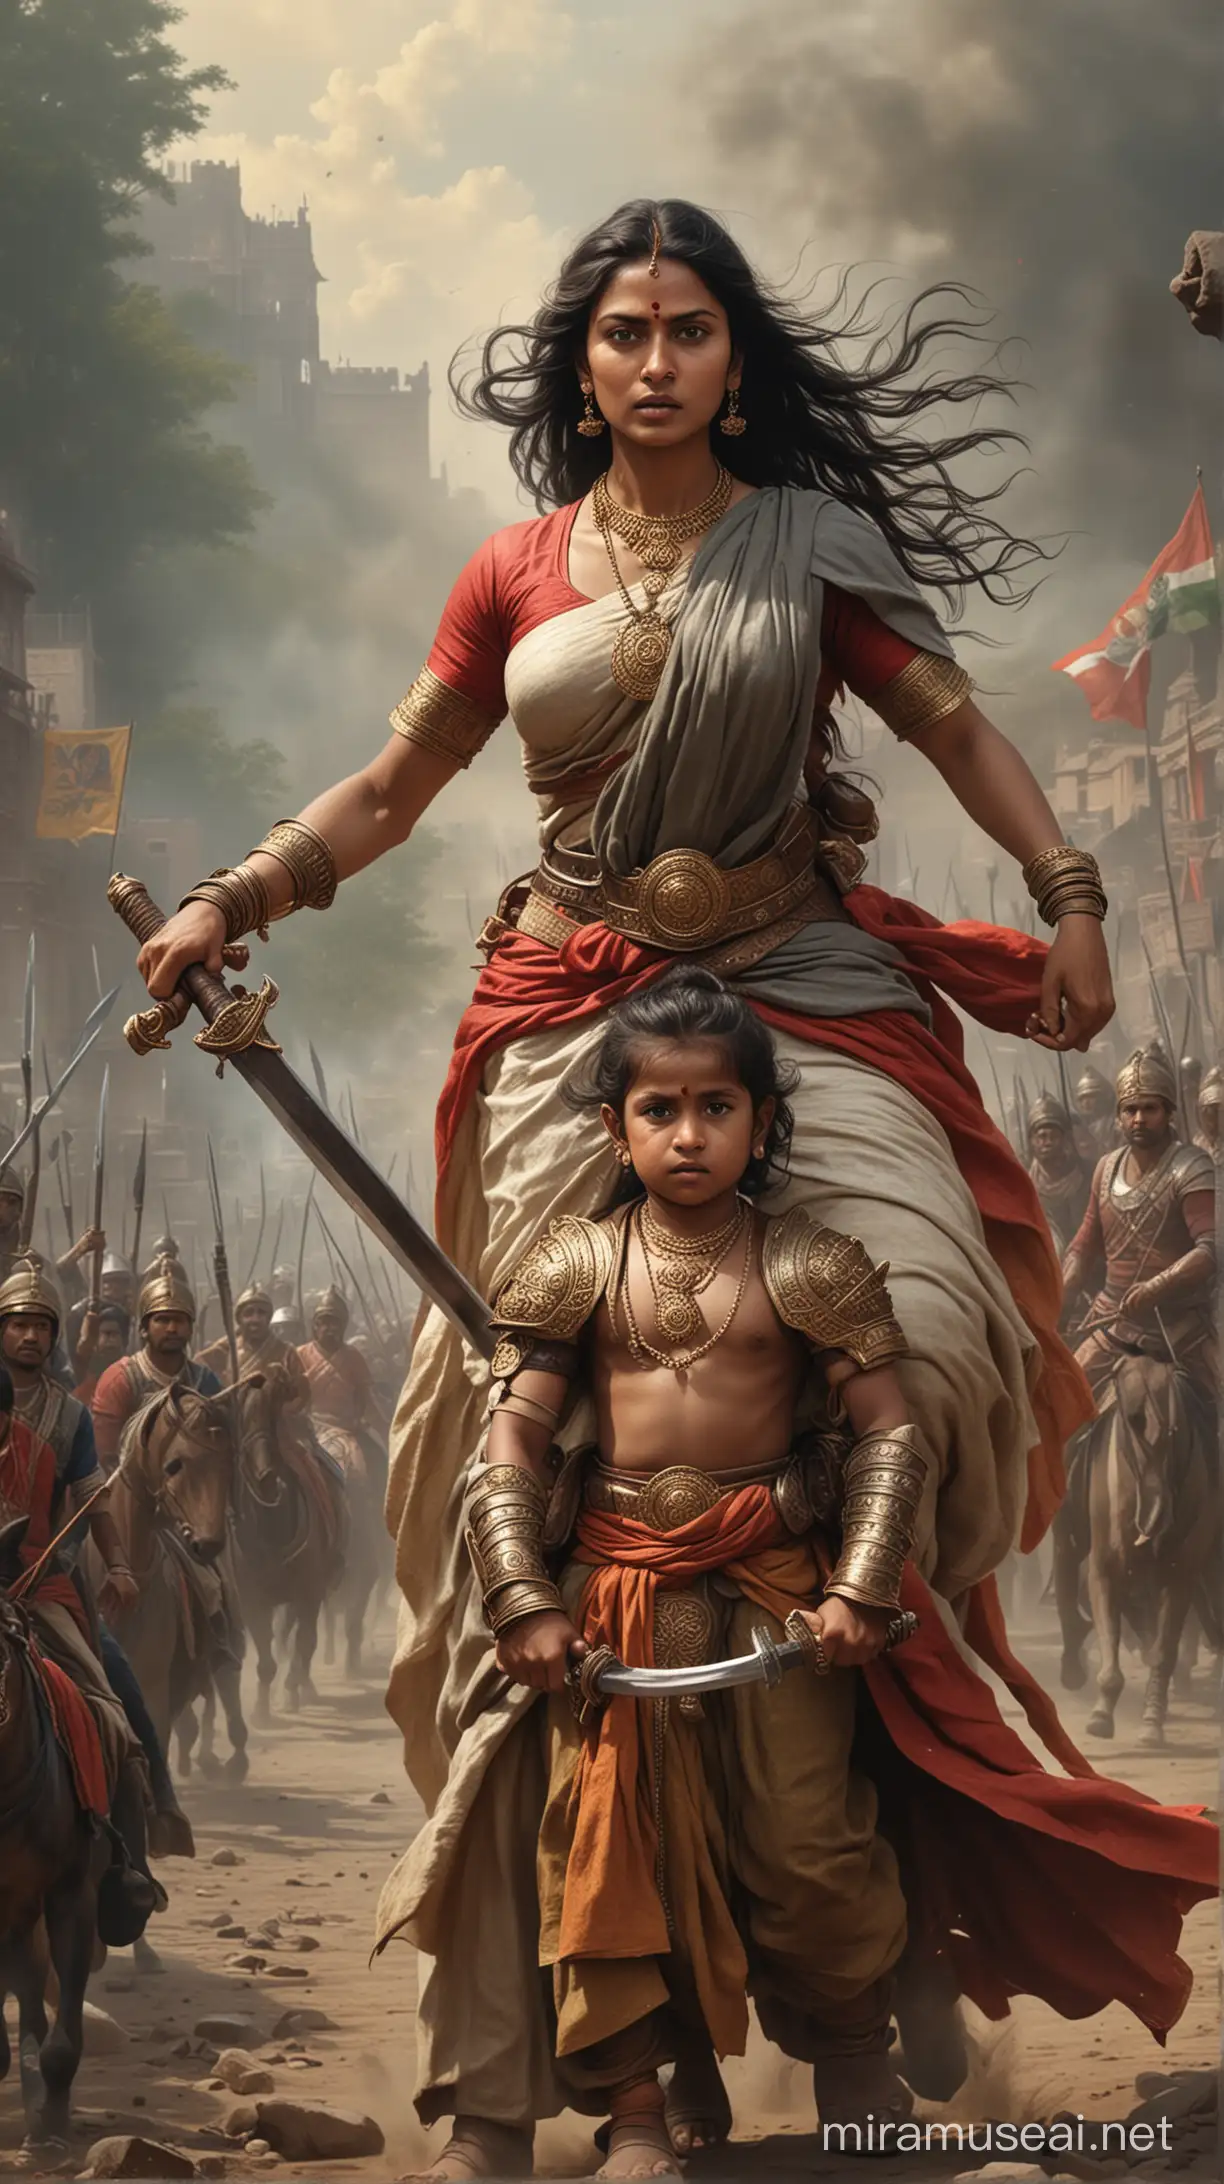 Lakshmi Bai Battle Scene Courageous Mother Defending with Sword Against British Forces